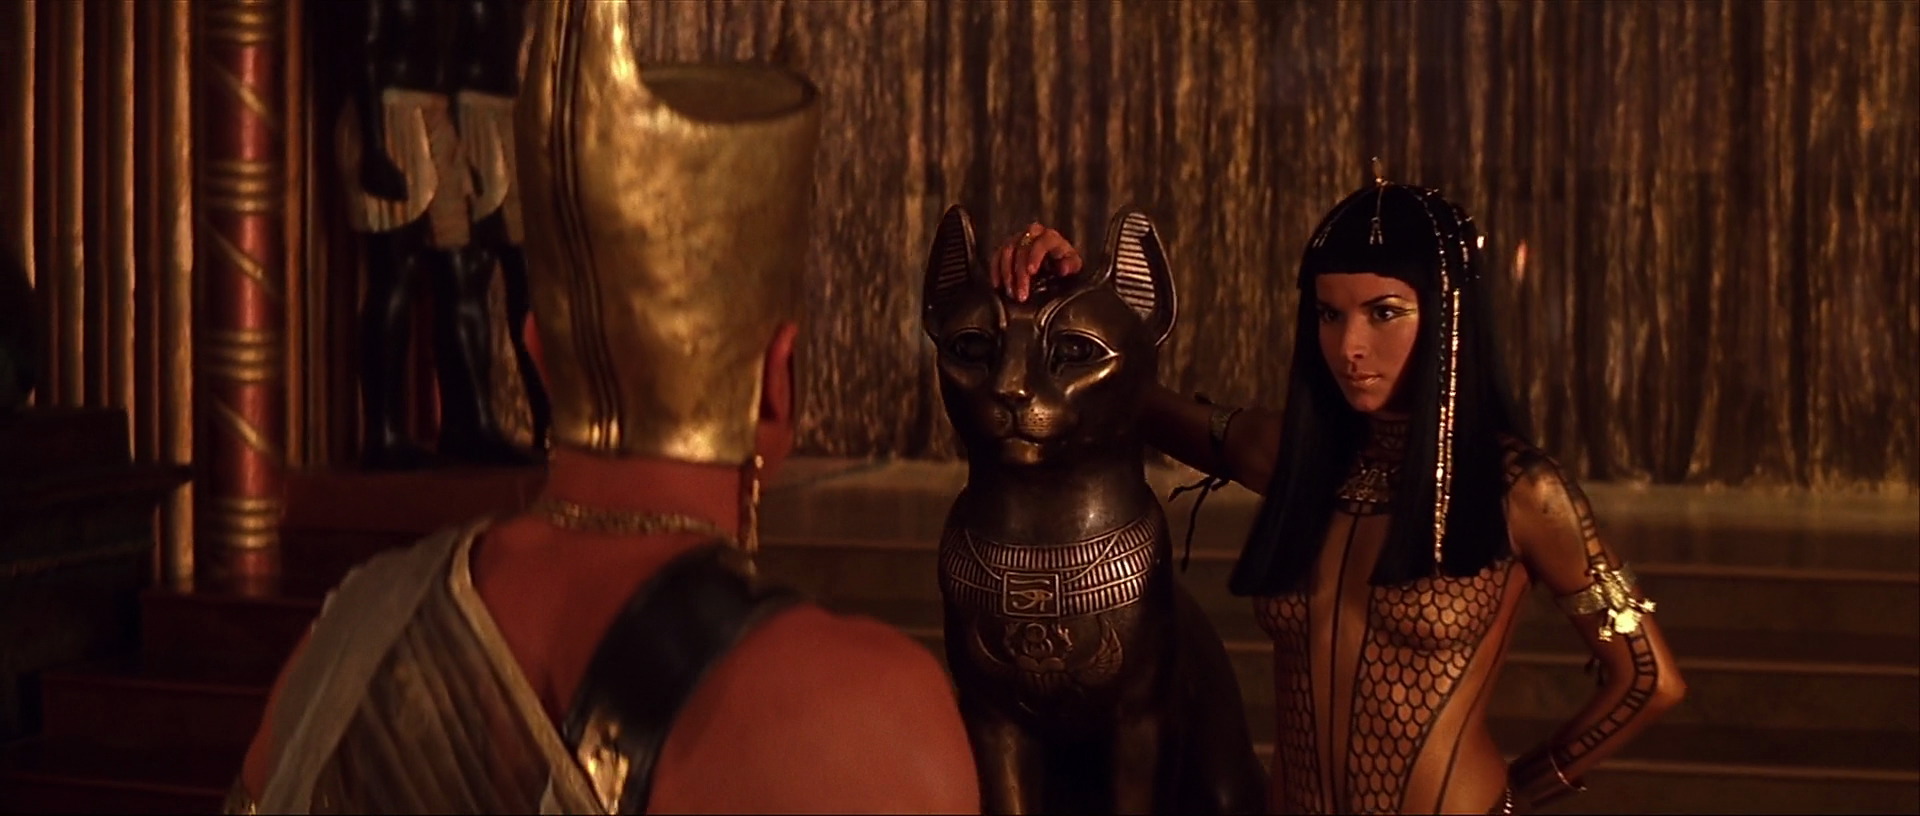 Сама египетская сила помогла мужику выебать зрелую Клеопатру